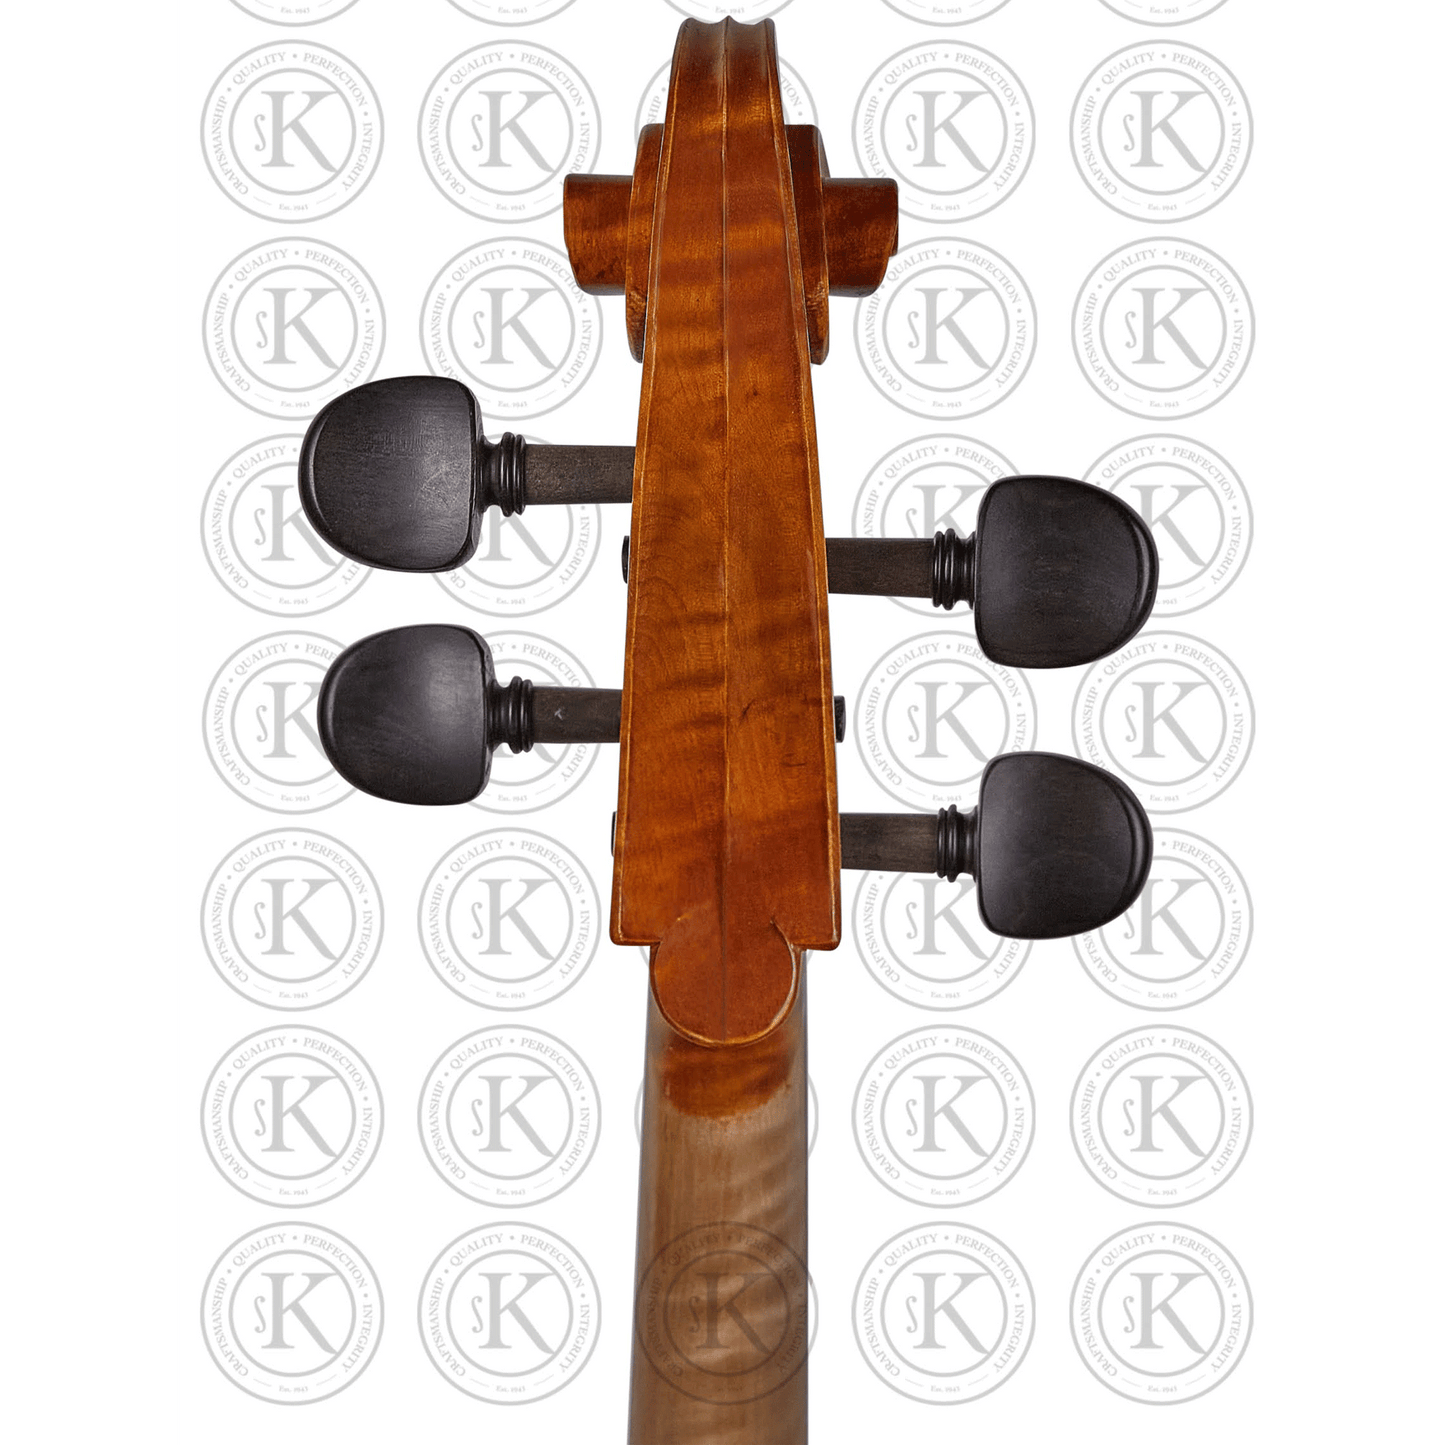 Liandro DiVacenza™ Cello